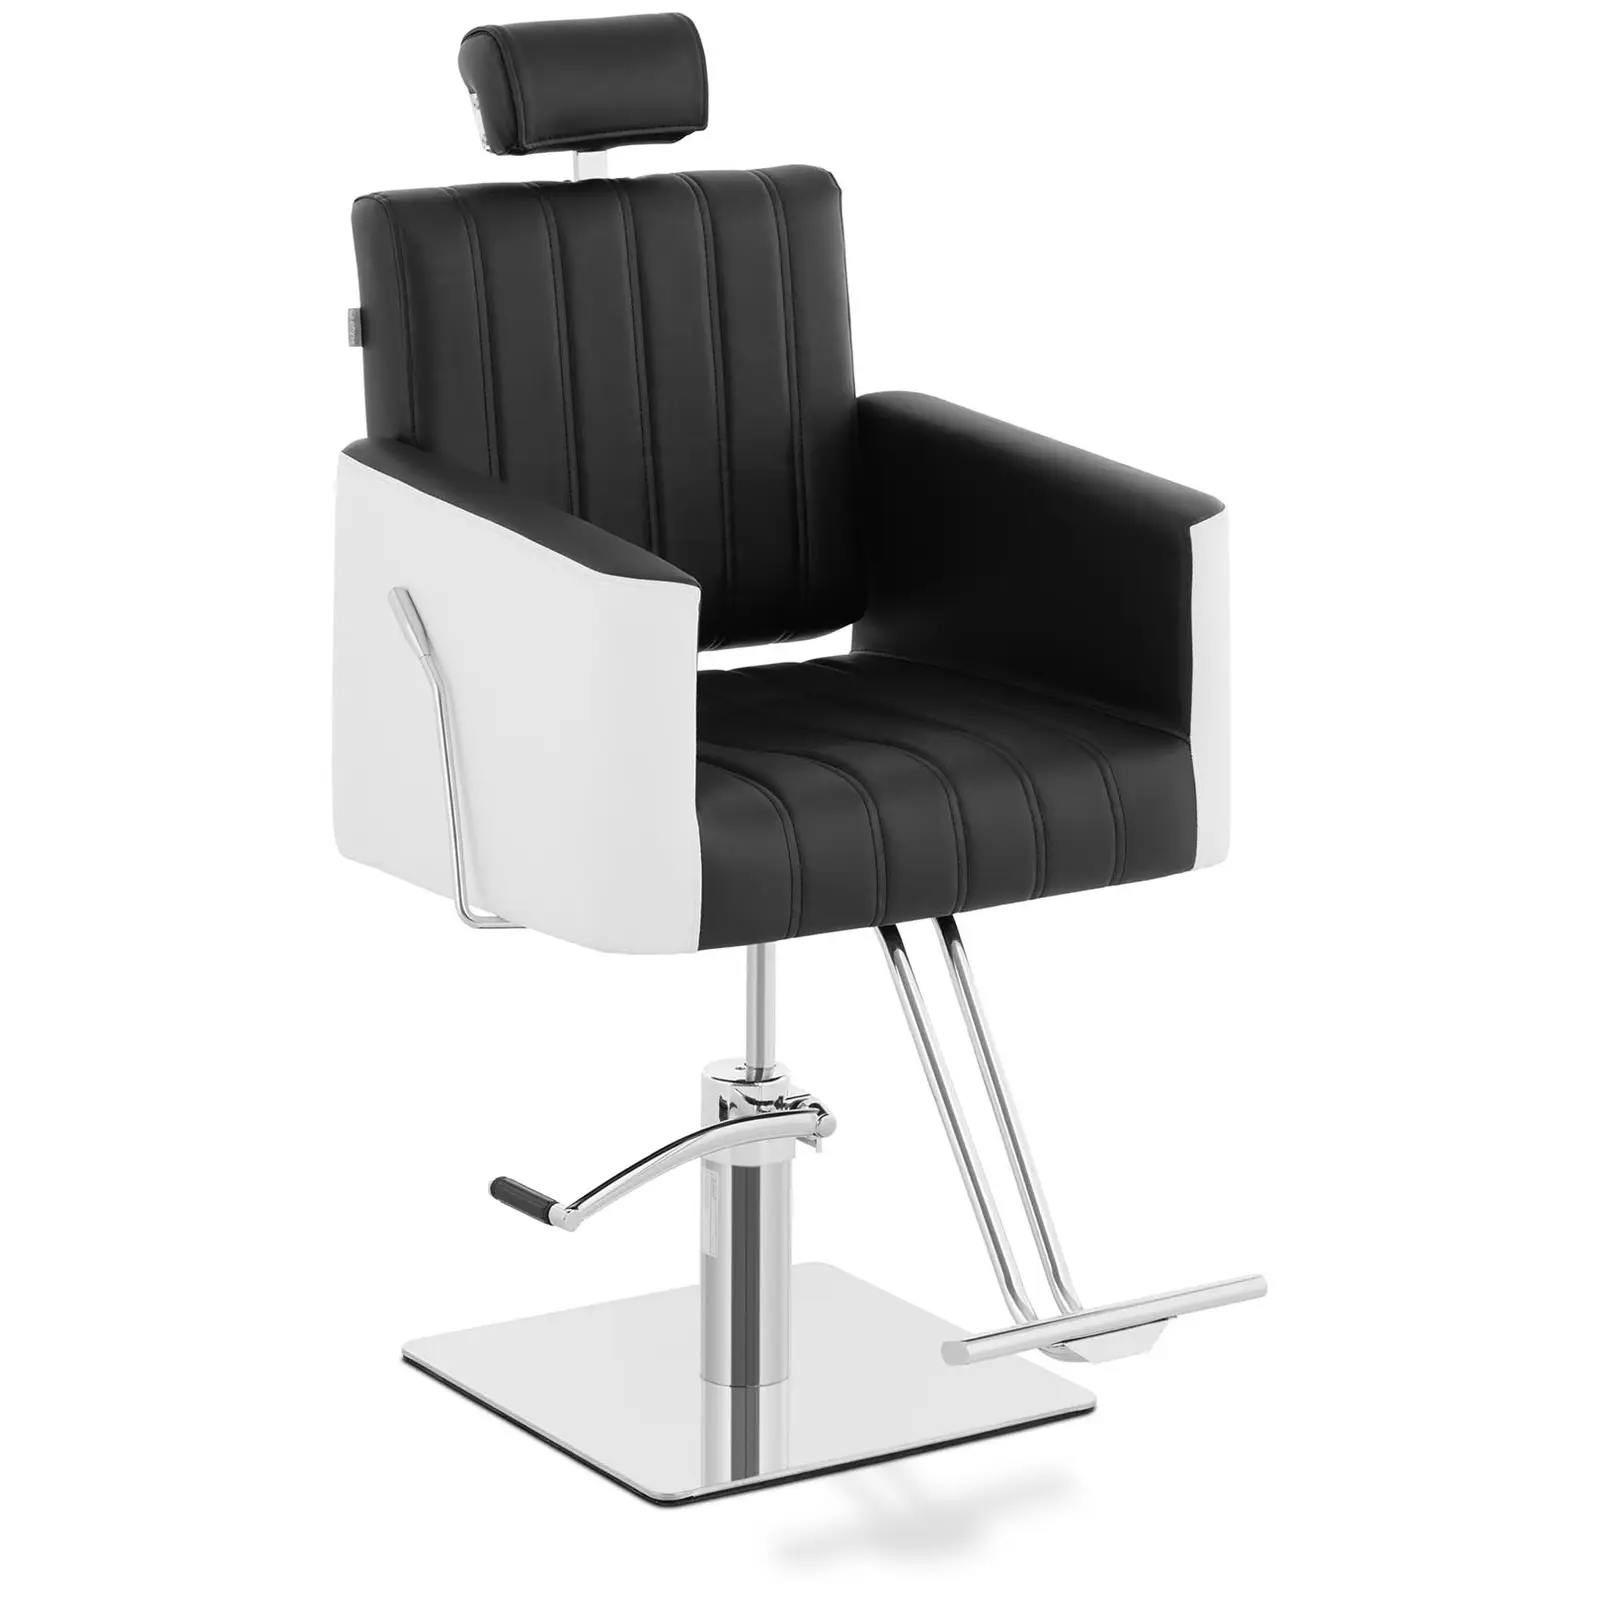 Fauteuil de coiffeur avec repose-pieds - 470 x 630 mm - 150 kg - Noir, Blanc